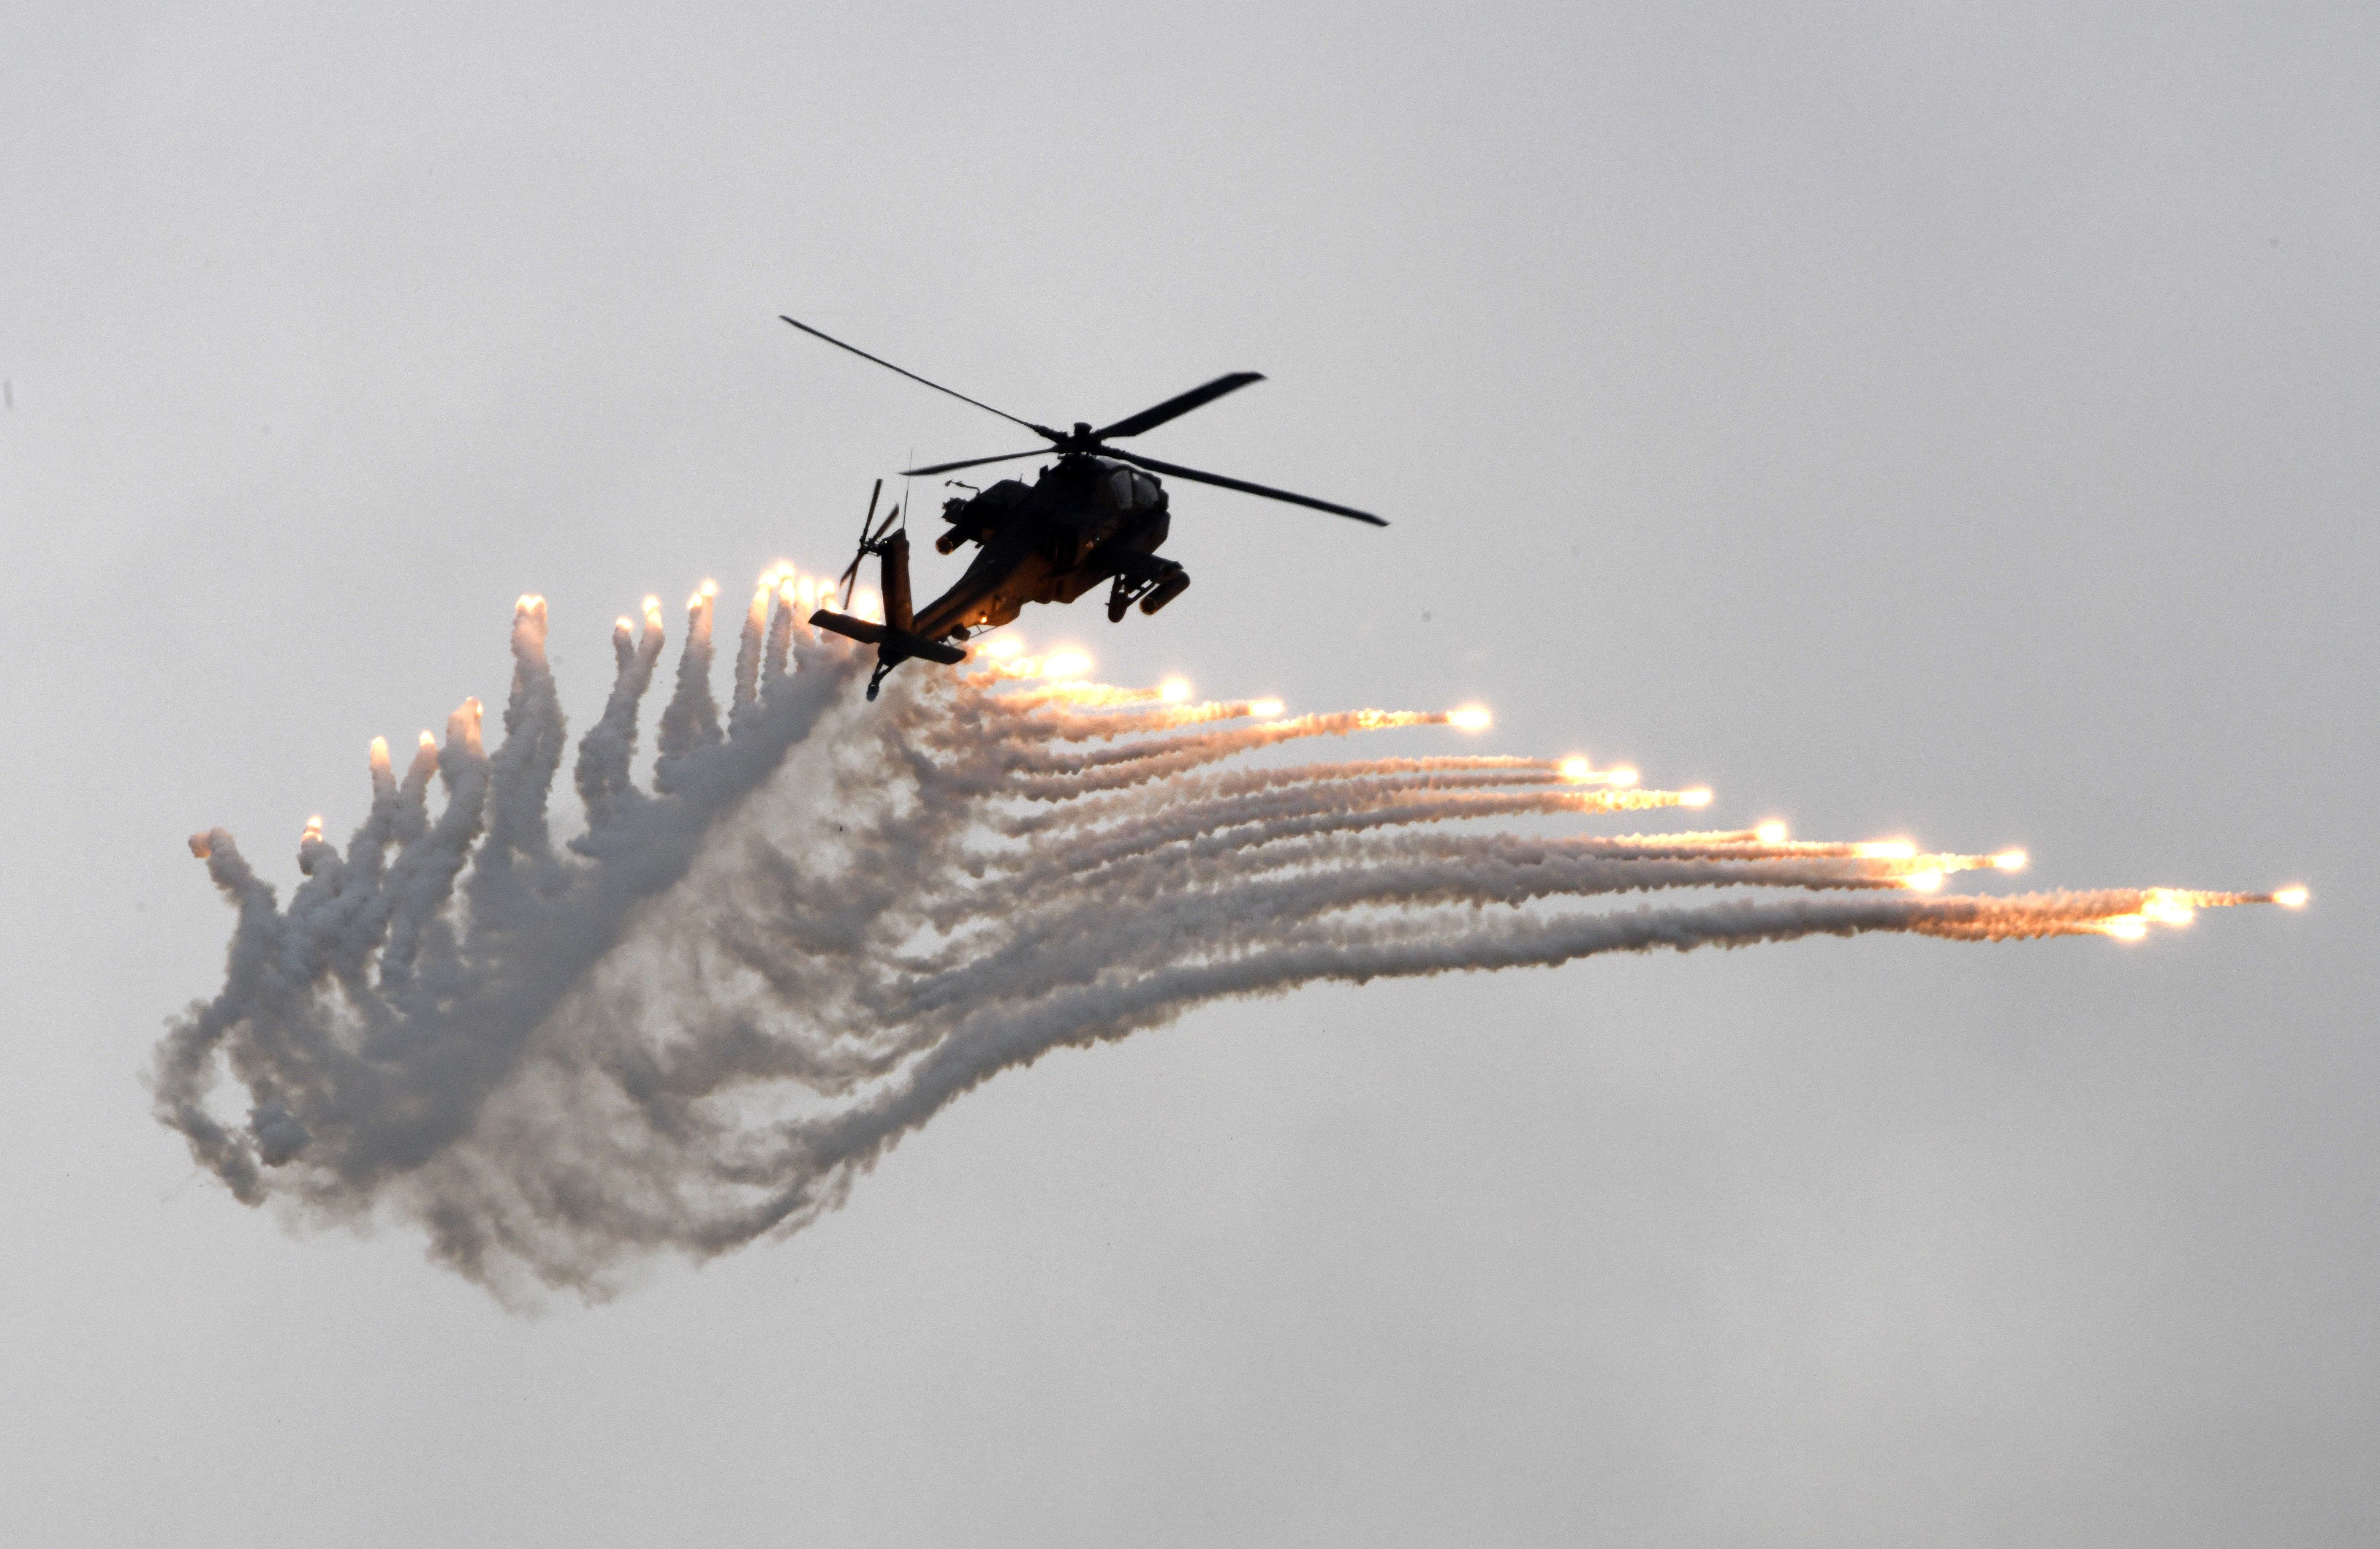 Ein AH-64 Apache-Kampfhubschrauber feuert während der Han-Kuang-Übung auf dem Luftwaffenstützpunkt Ching Chuan Kang (CCK) in Taichung, Zentraltaiwan, am 7. Juni 2018 Leuchtraketen ab.